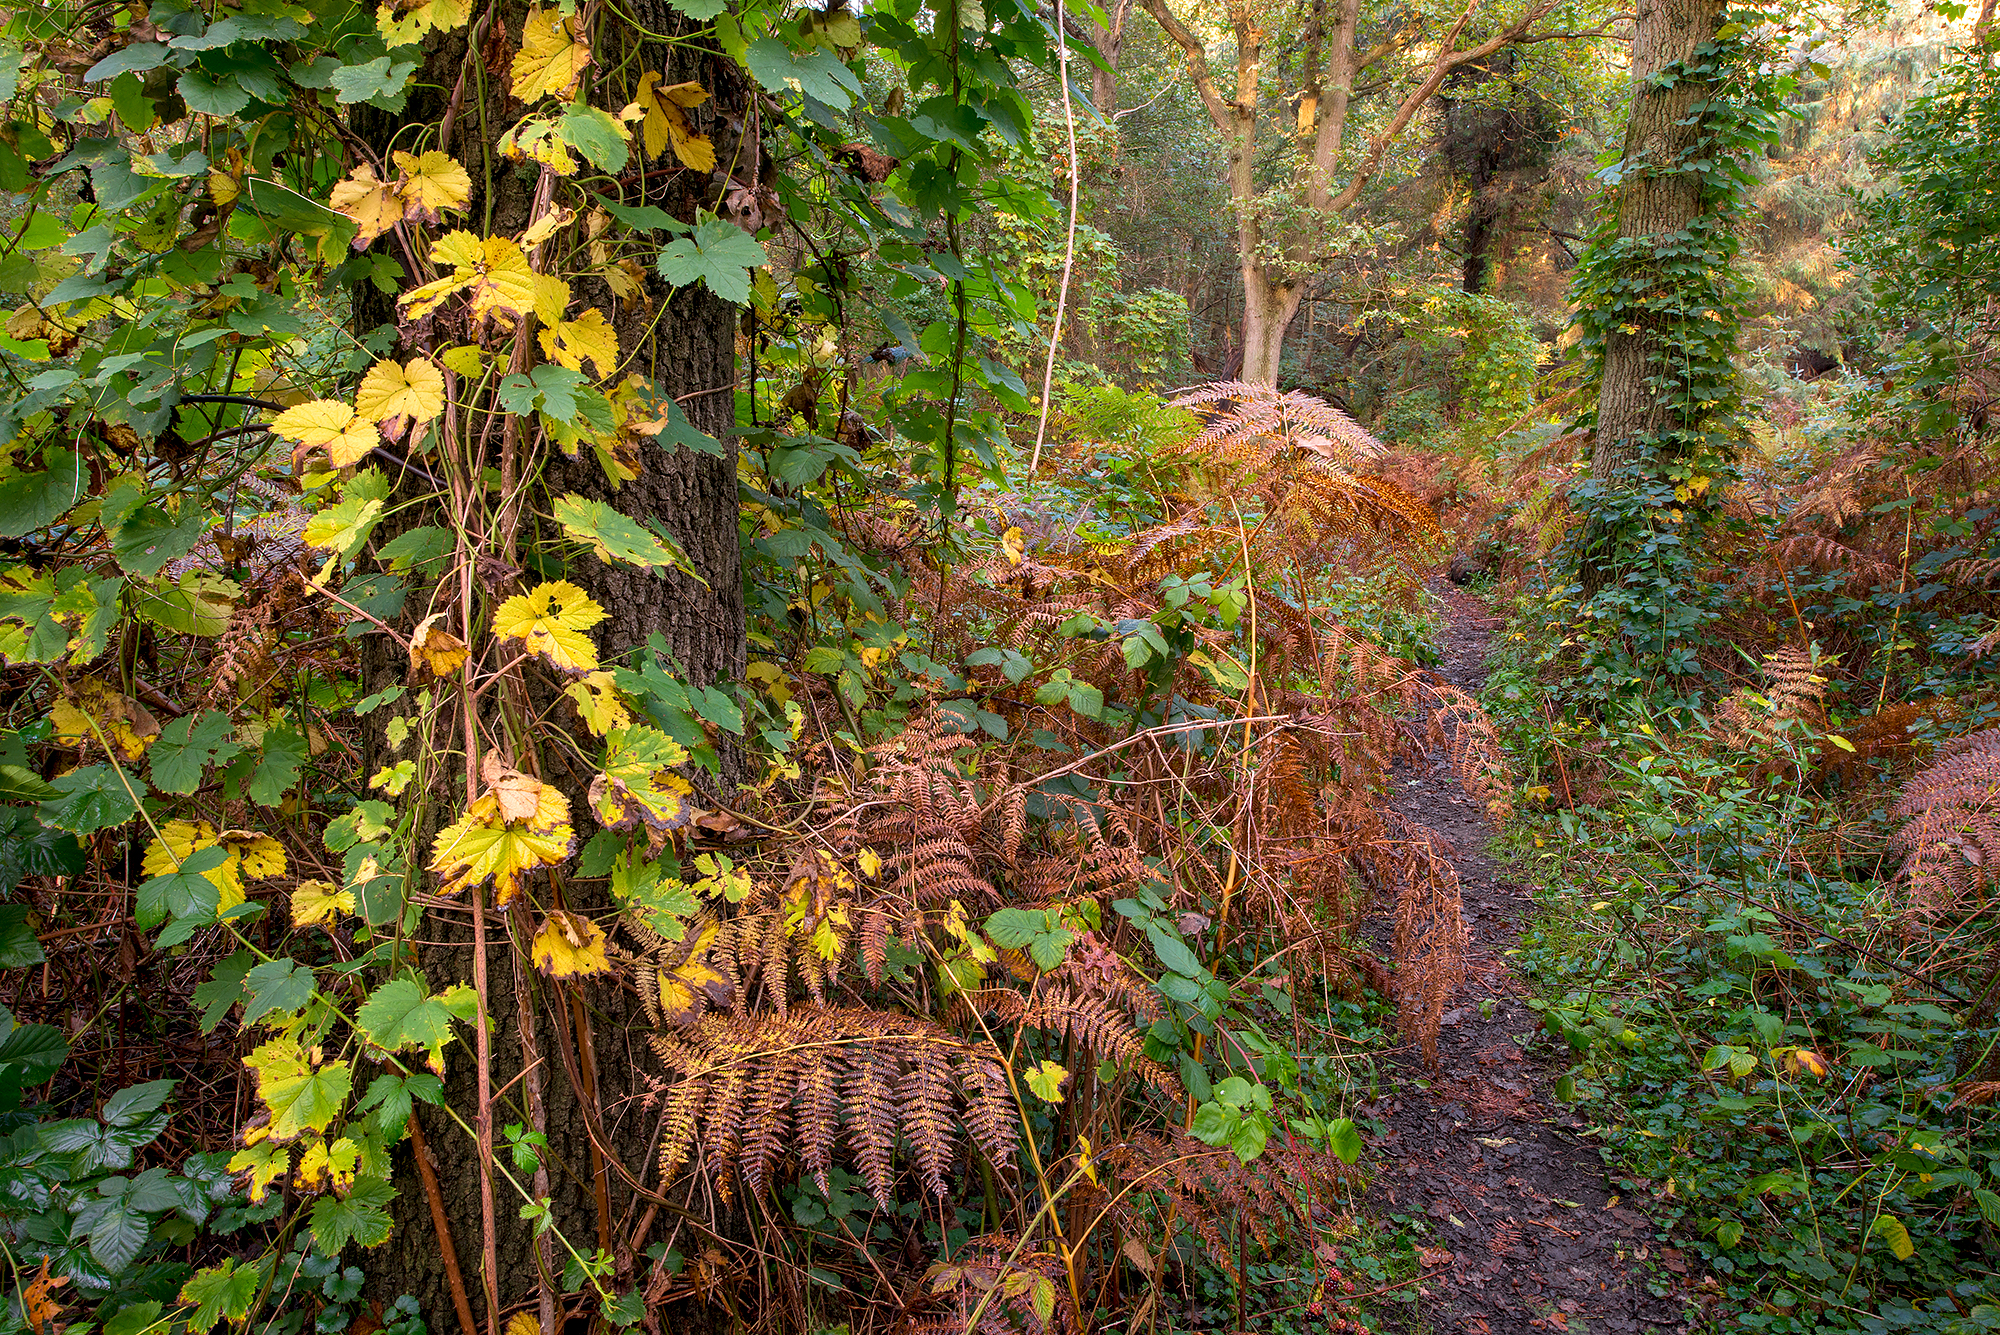 Smal struinpaadje door dichte vegetatie van bramen en varens tijdens herfst in het bos in het Noordhollands Duinreservaat bij Heemskerk